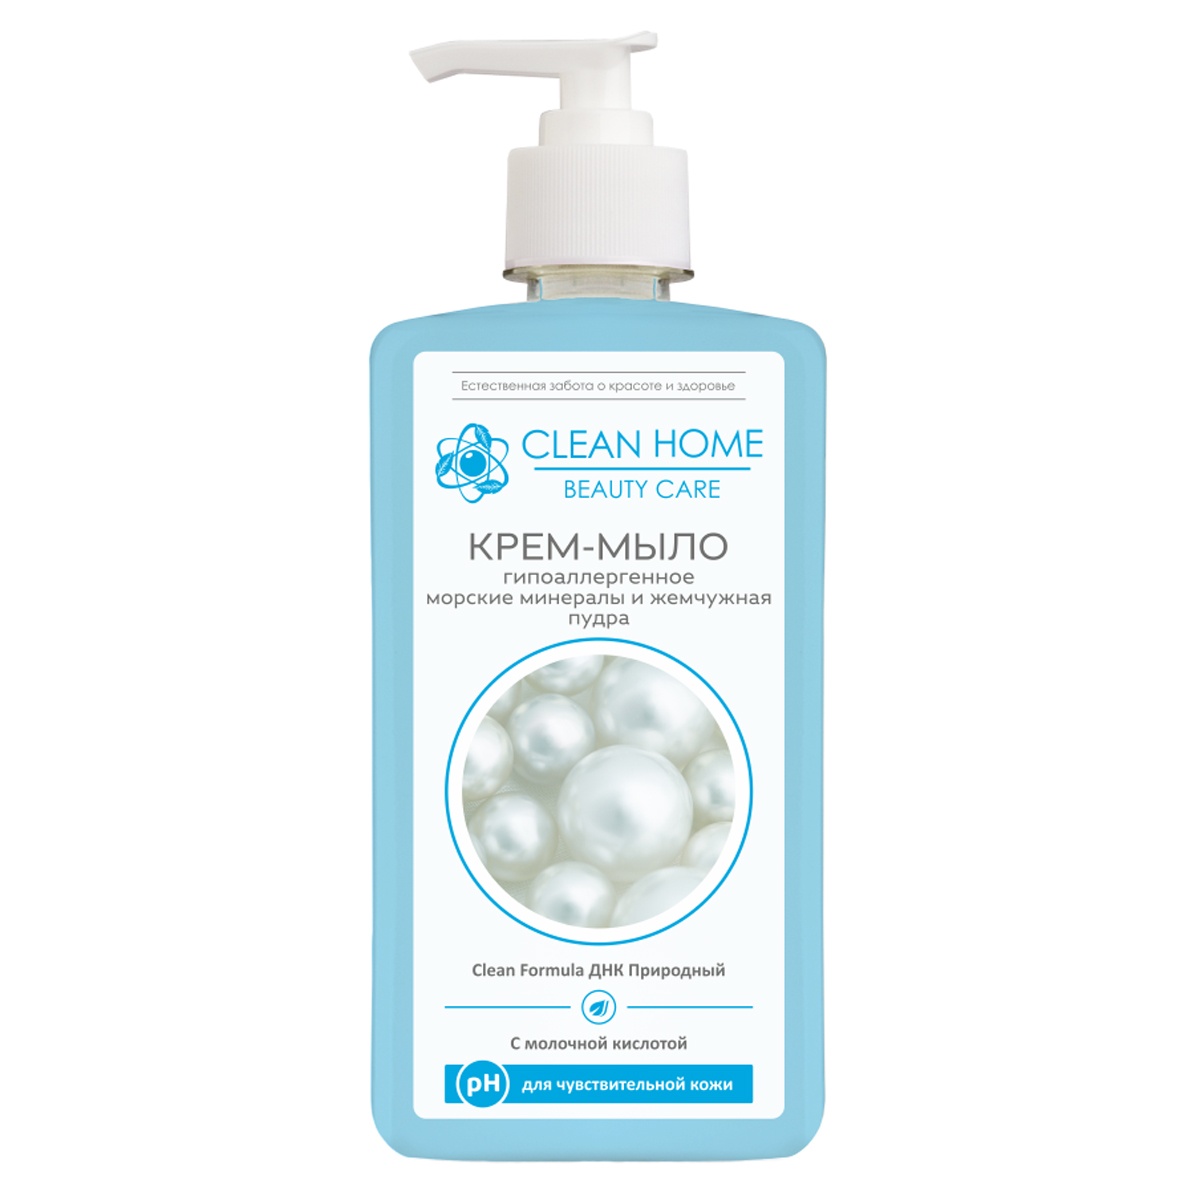 Крем-мыло для рук Clean Home Beauty Care Гипоаллергенное anti acne крем тинт с эффектом сияния тон светлый 30г